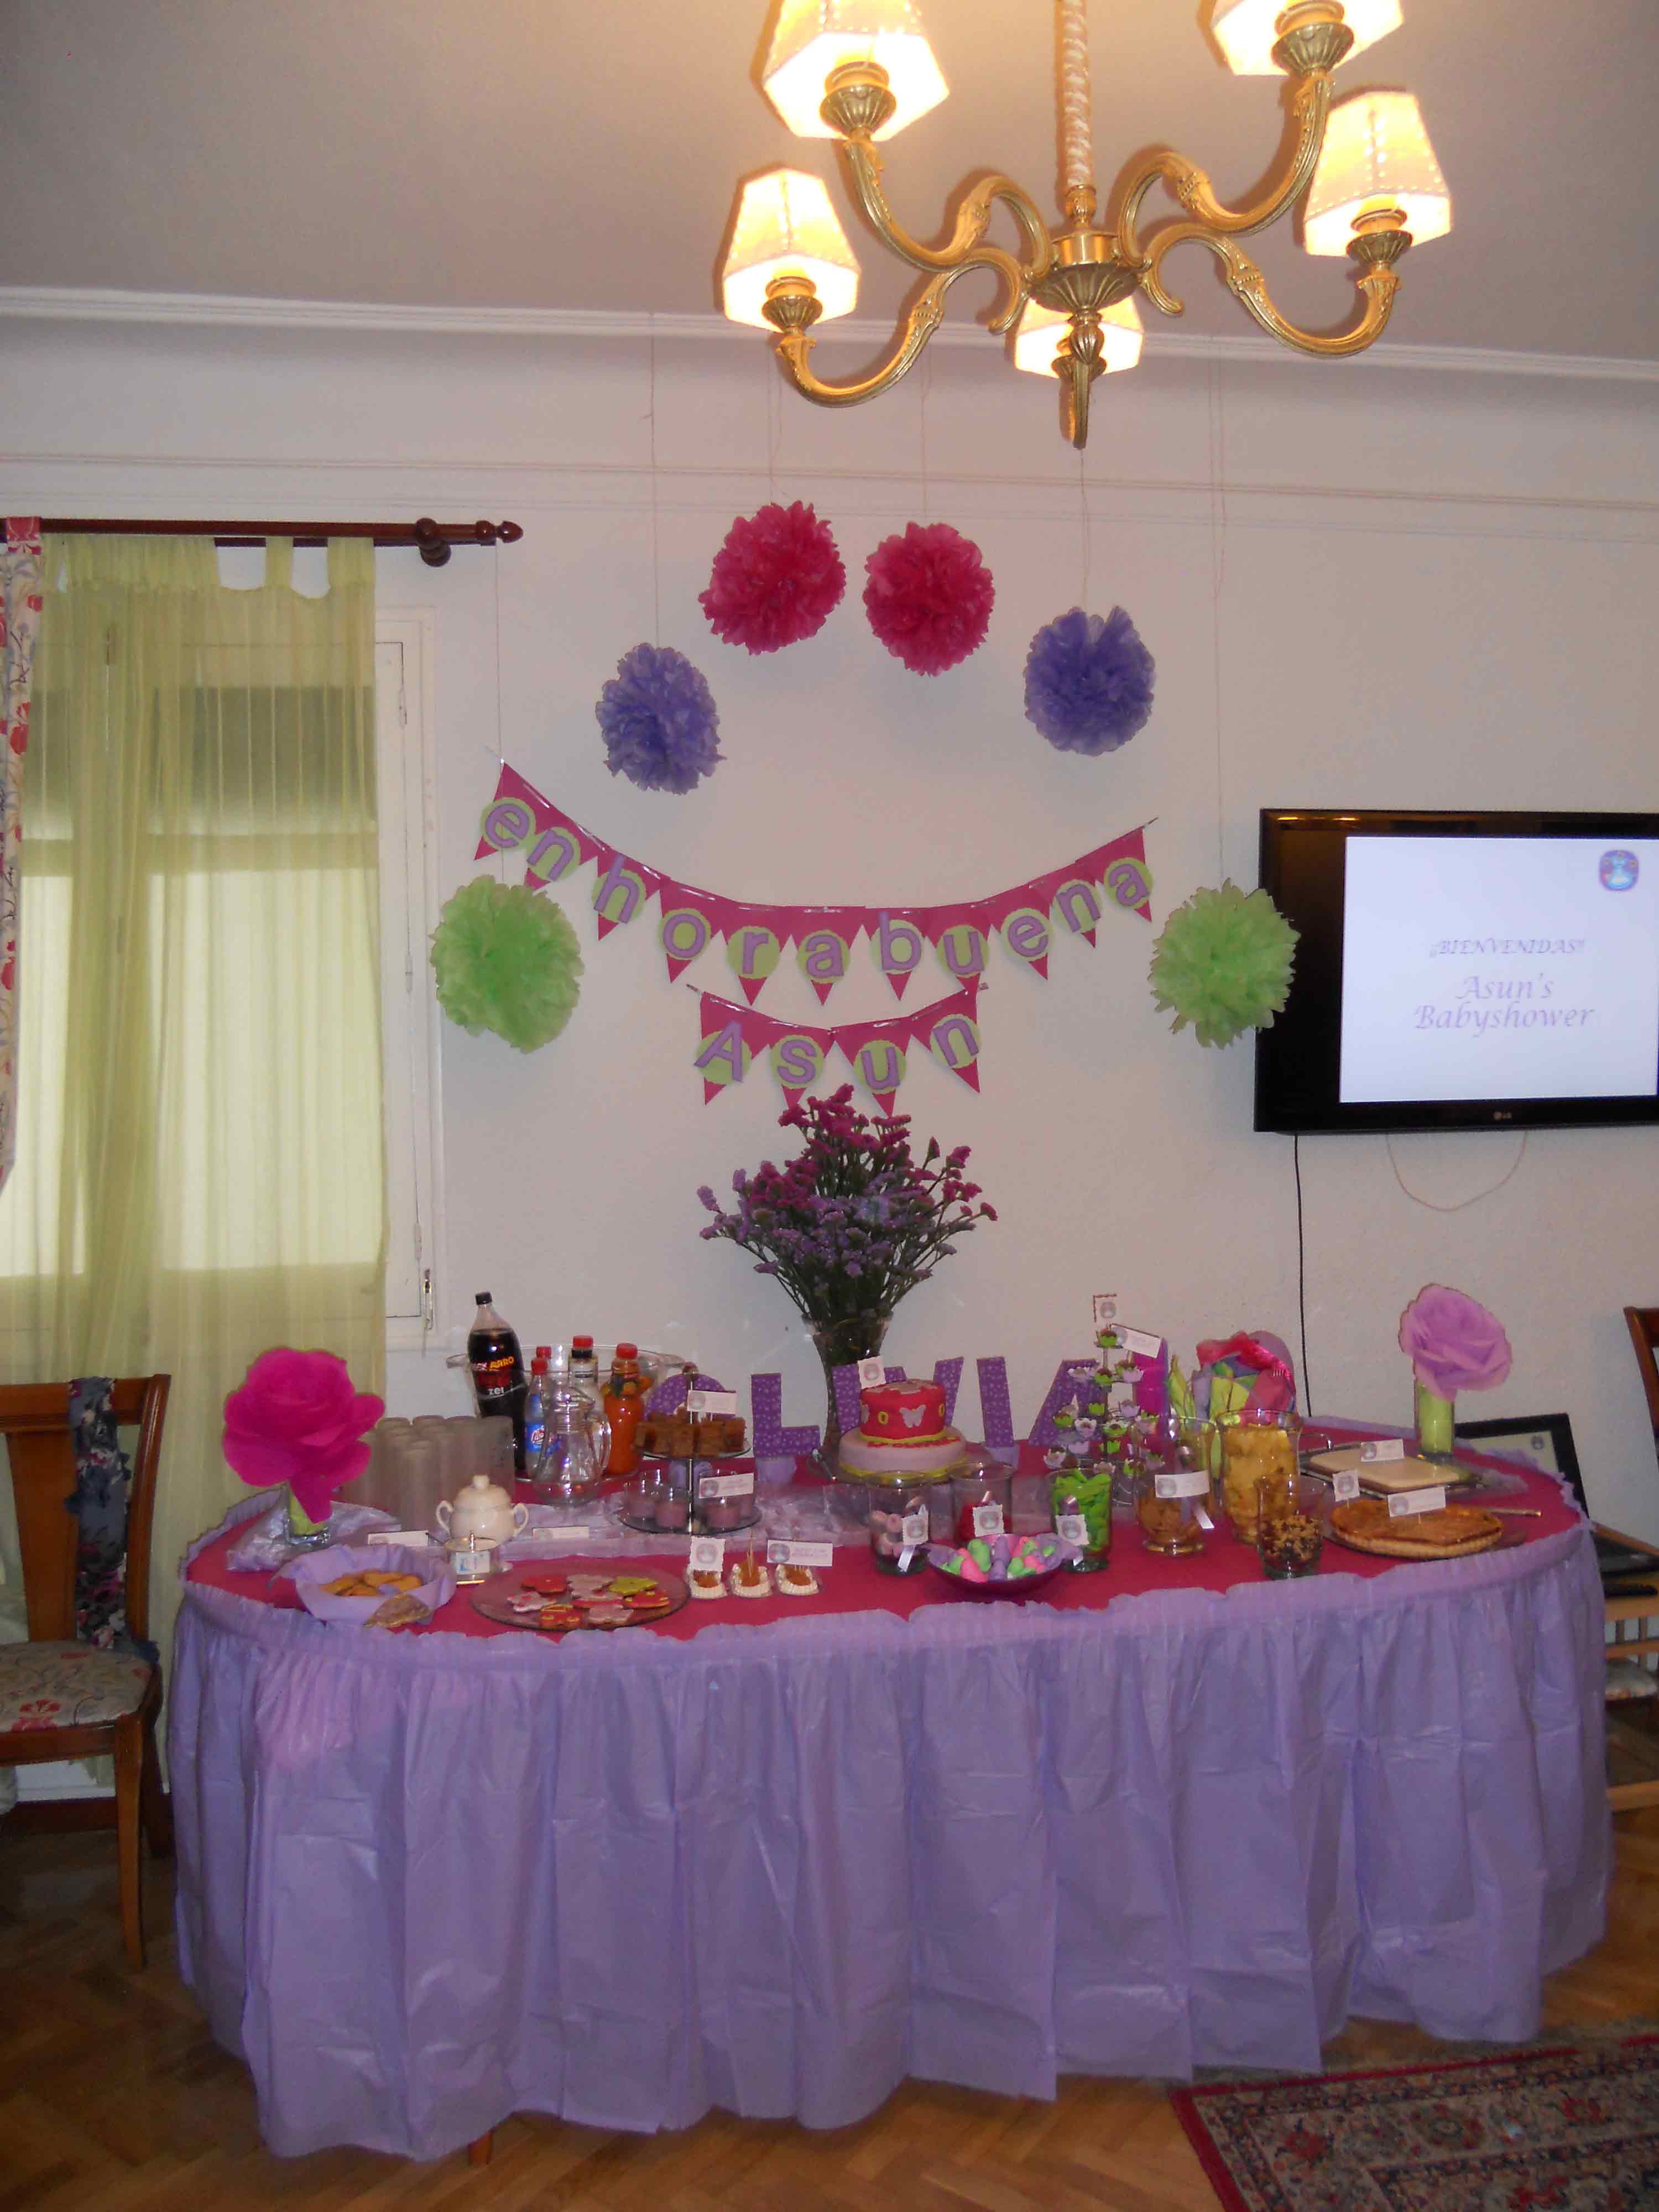 SIGUIENDO CON LOS BABYSHOWER: Babyshower para niña. | My Trendy Party